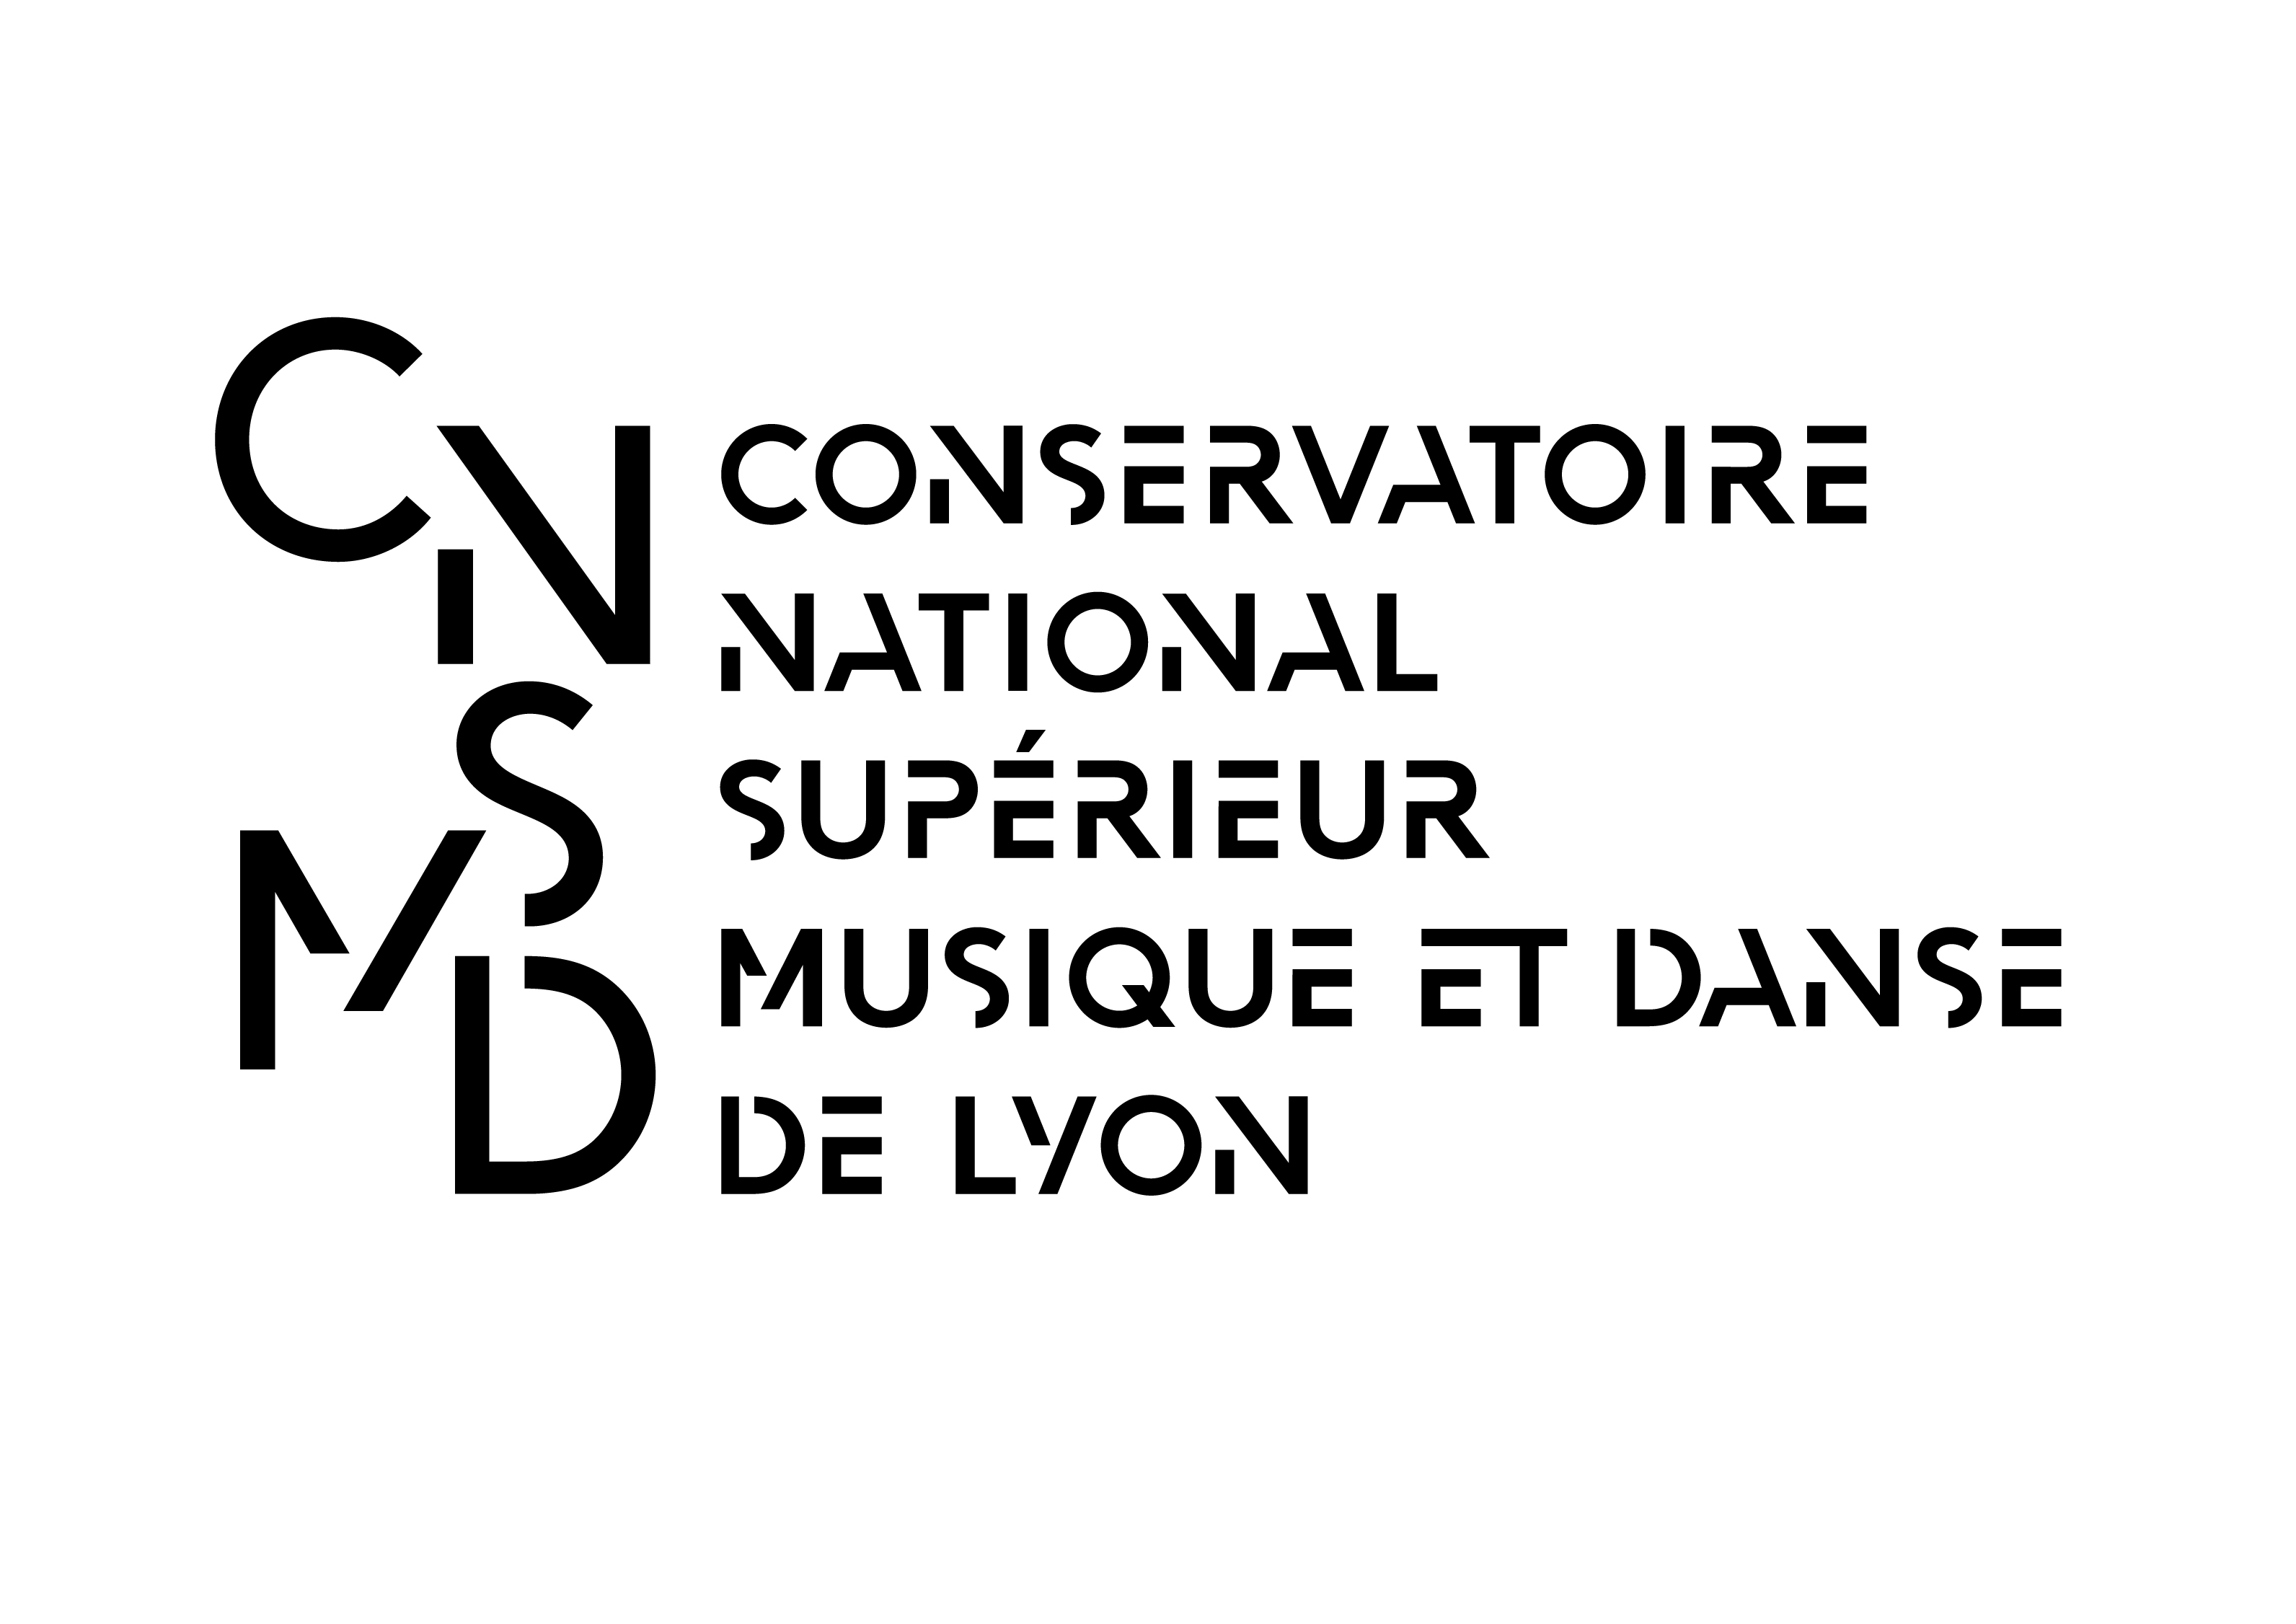 Conservatoire National Supérieur Musique et Danse de Lyon (CNSMD)